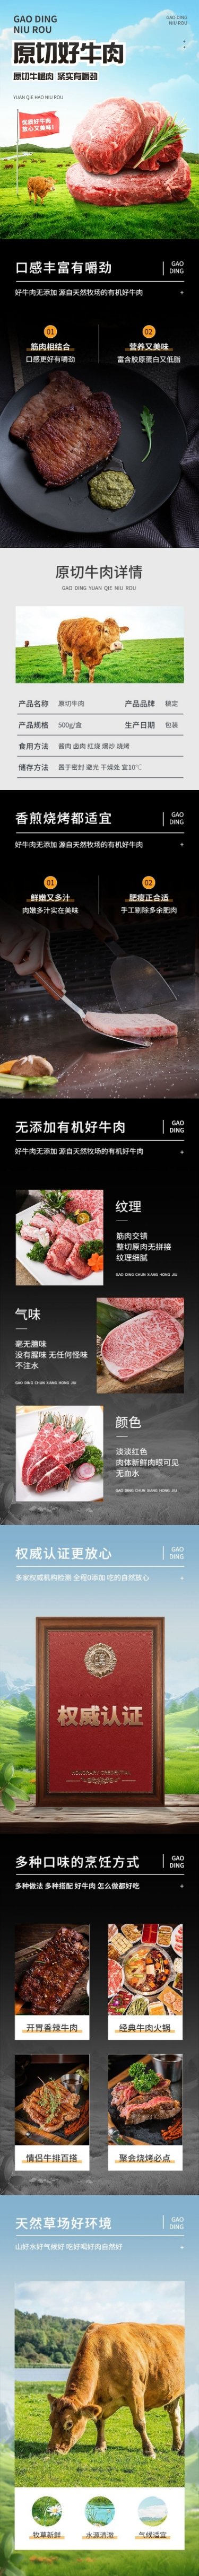 电商生鲜牛肉产品详情介绍详情页预览效果